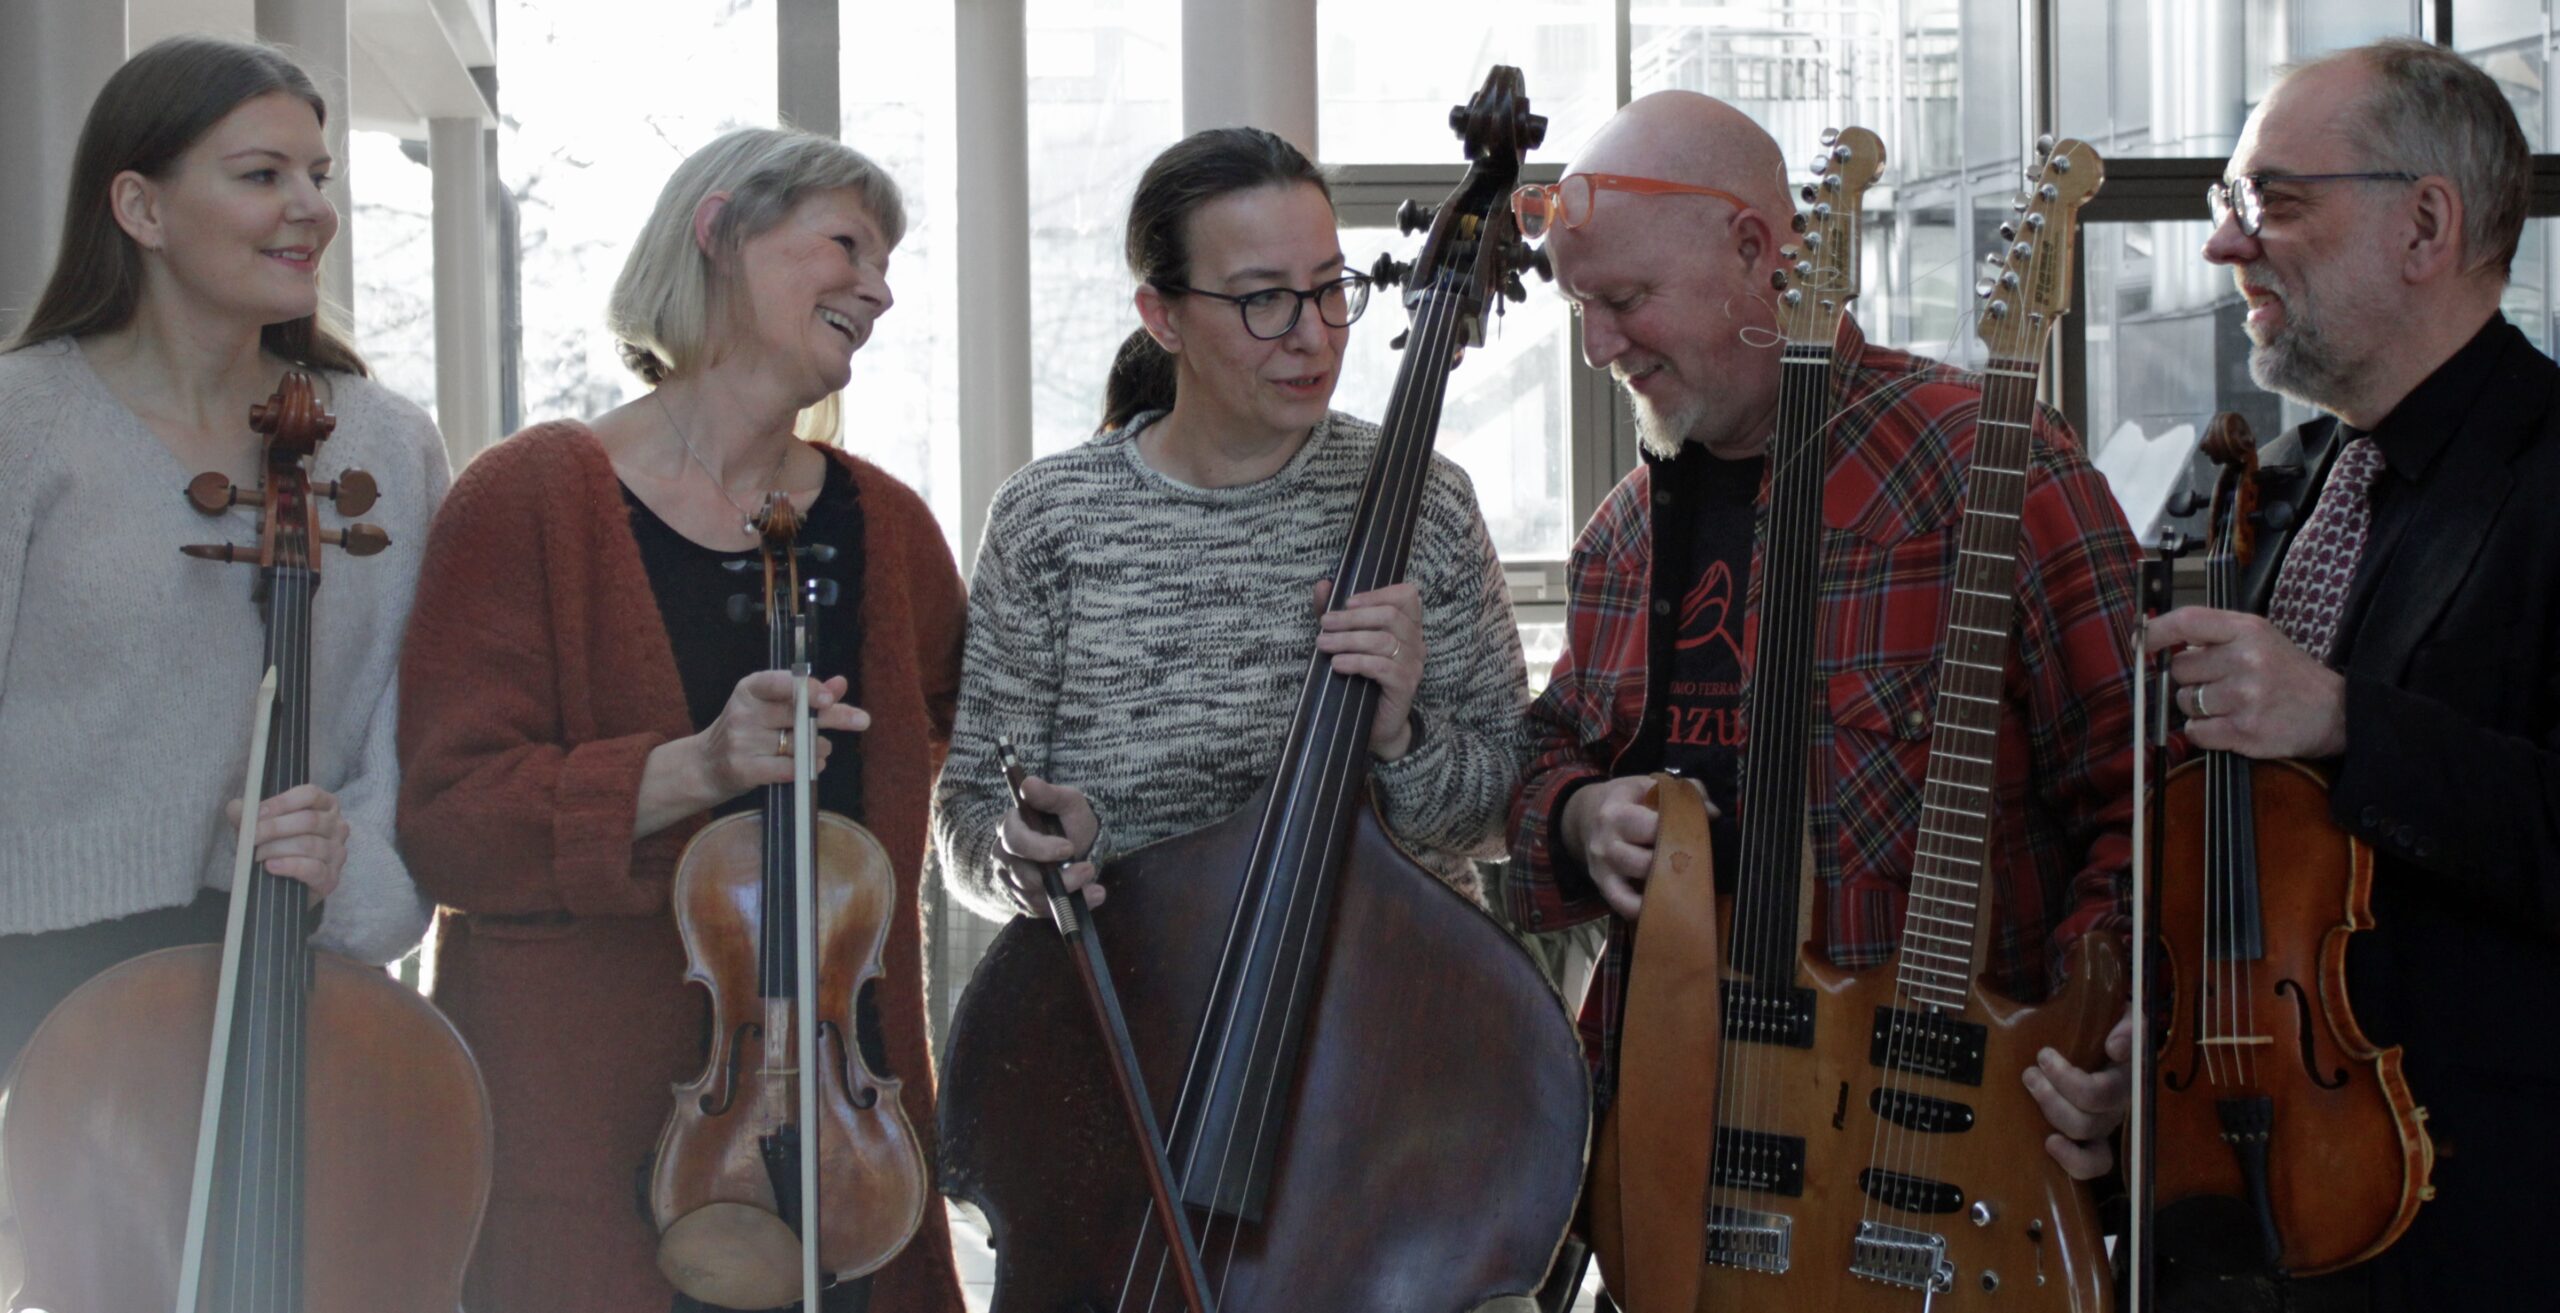 Kvintett Konstig på rad med sina instrument. Tina i mitten säger något roligt, övriga ler.